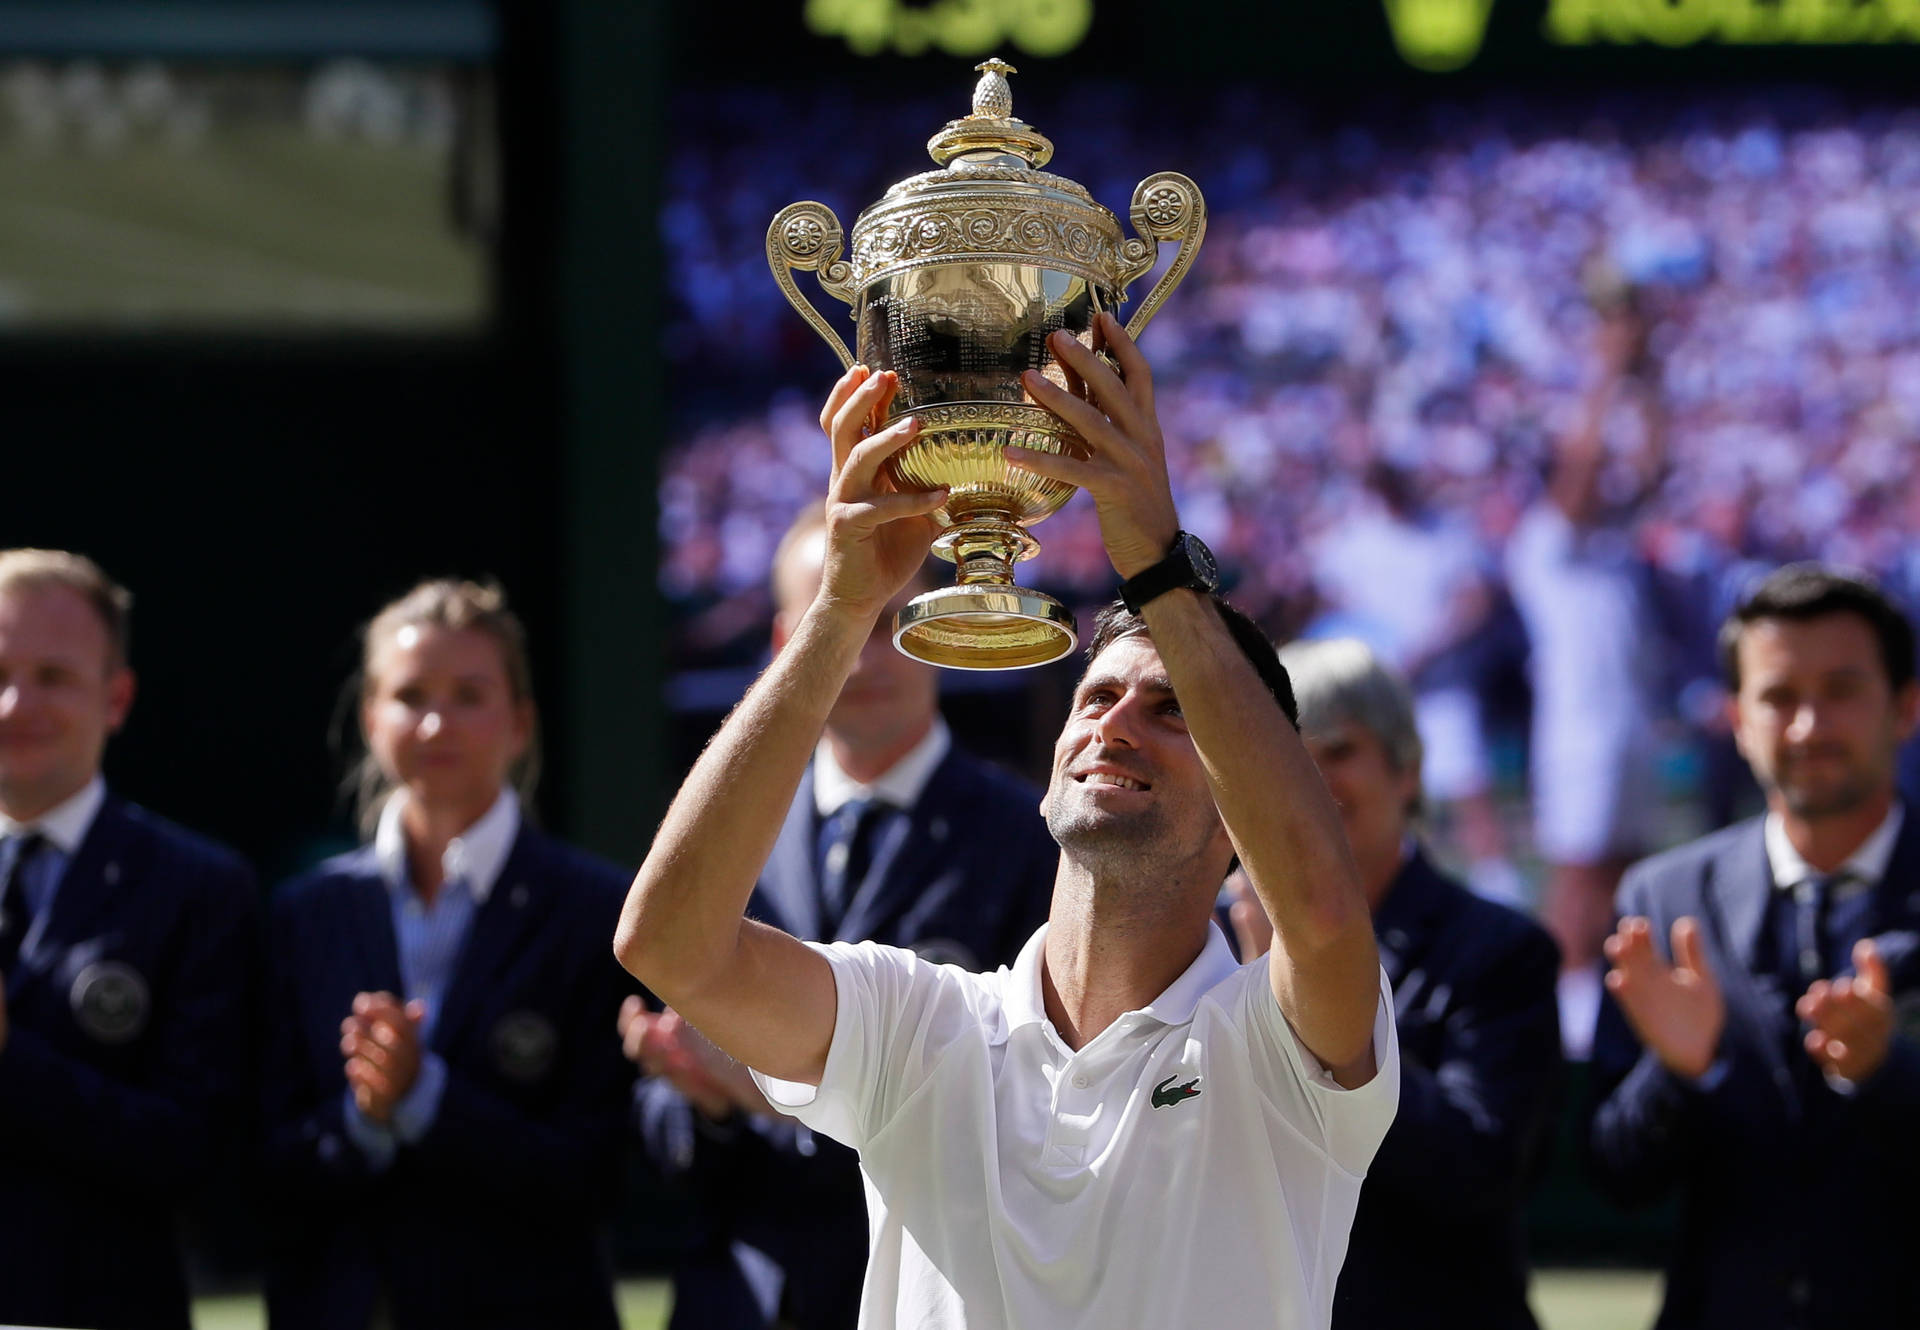 Novak Djokovic 2018 Wimbledon Men's Winner